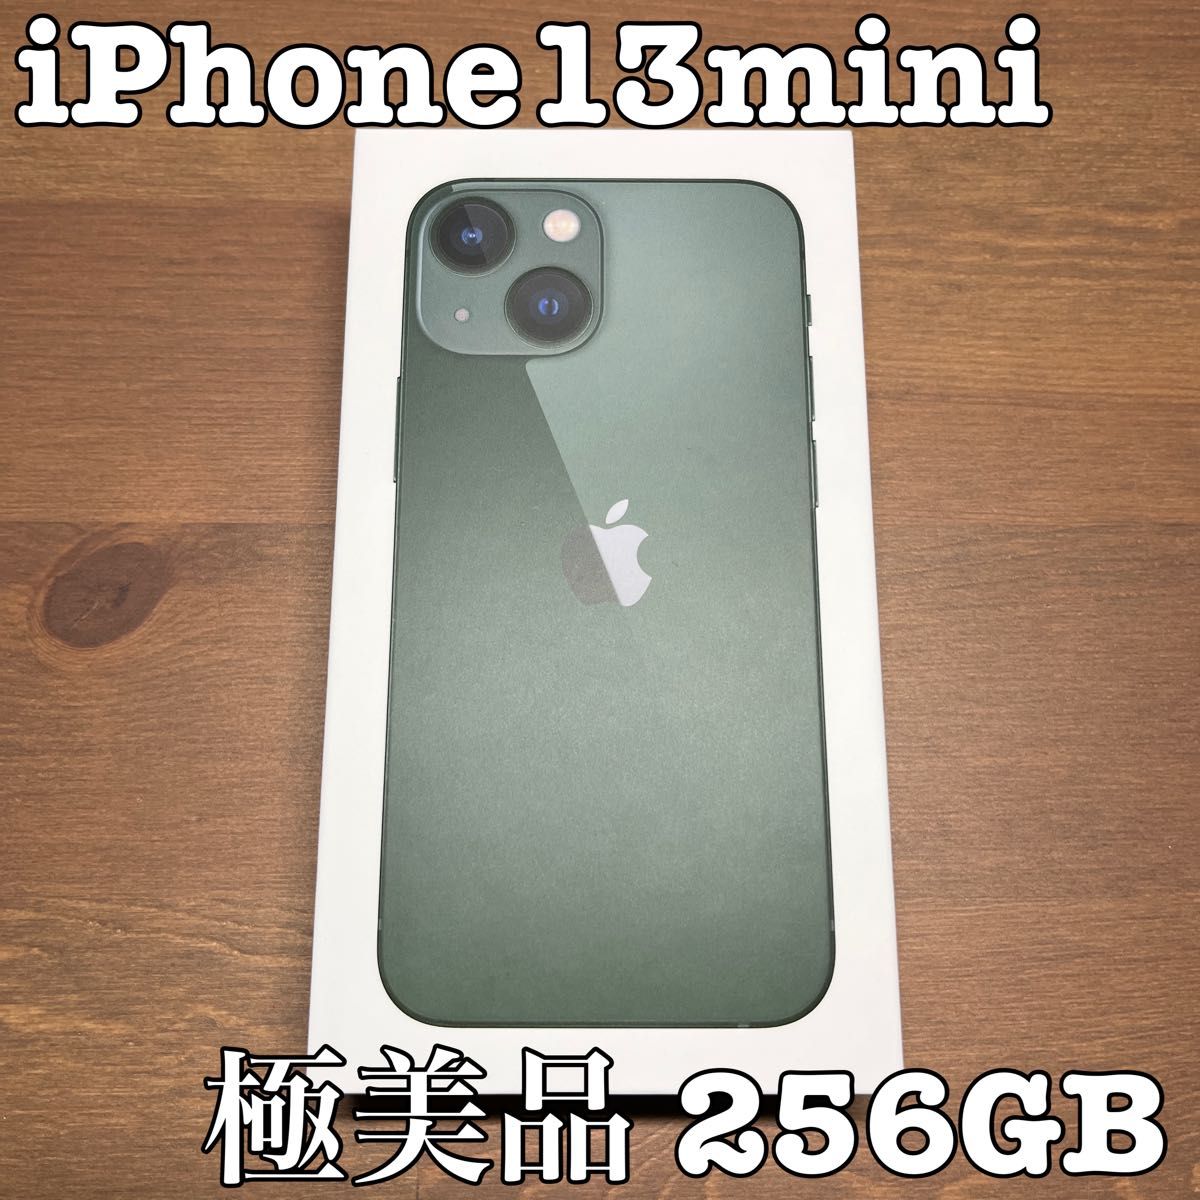 人気ブランド新作豊富 楽天モバイル mini iPhone13mini 128GB SIM